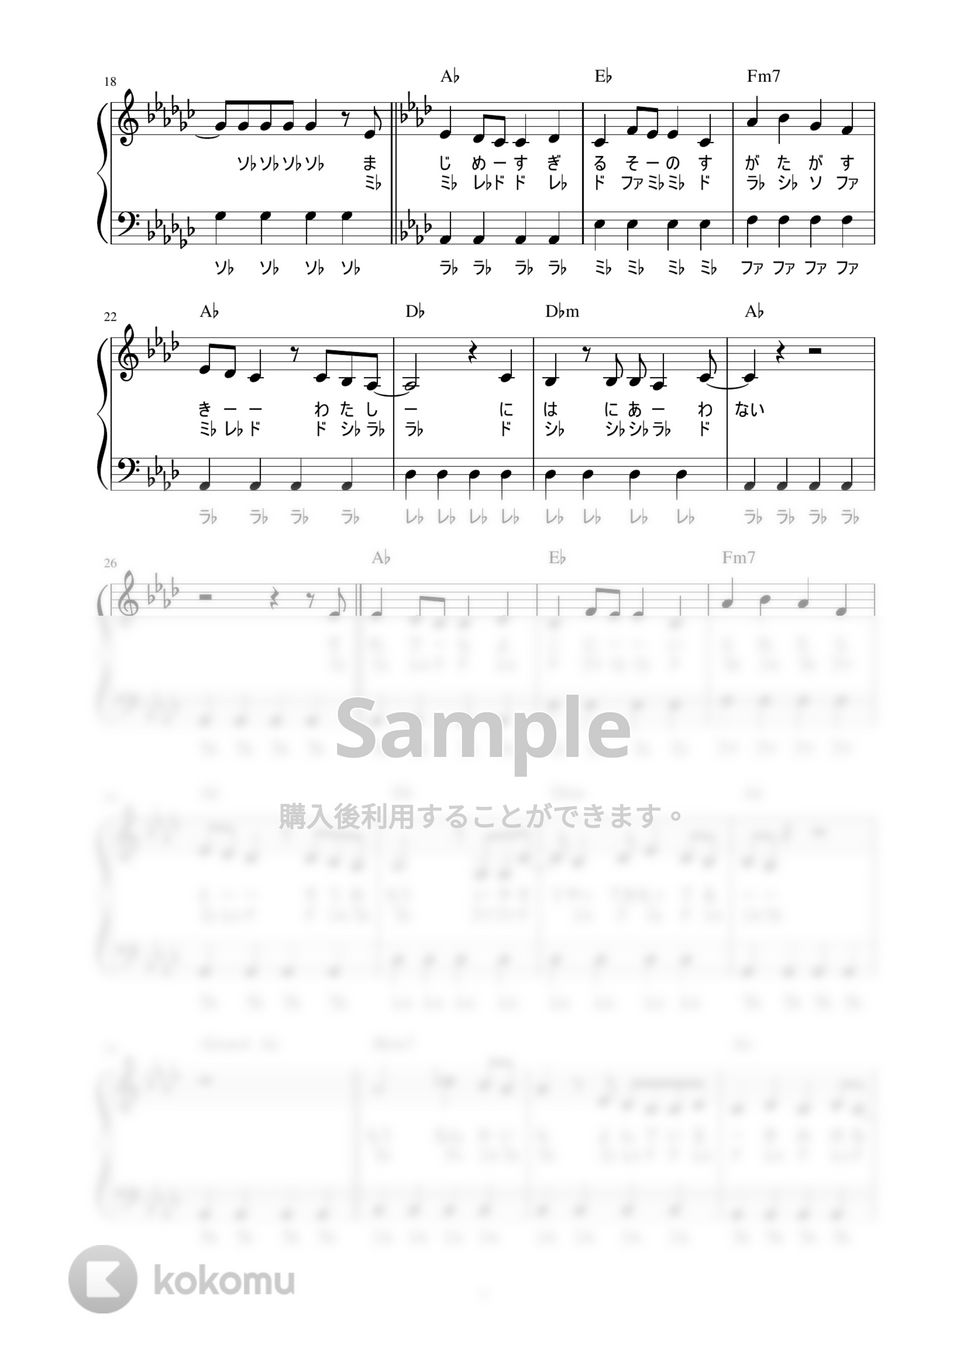 Conton Candy - ファジーネーブル (かんたん / 歌詞付き / ドレミ付き / 初心者) by piano.tokyo